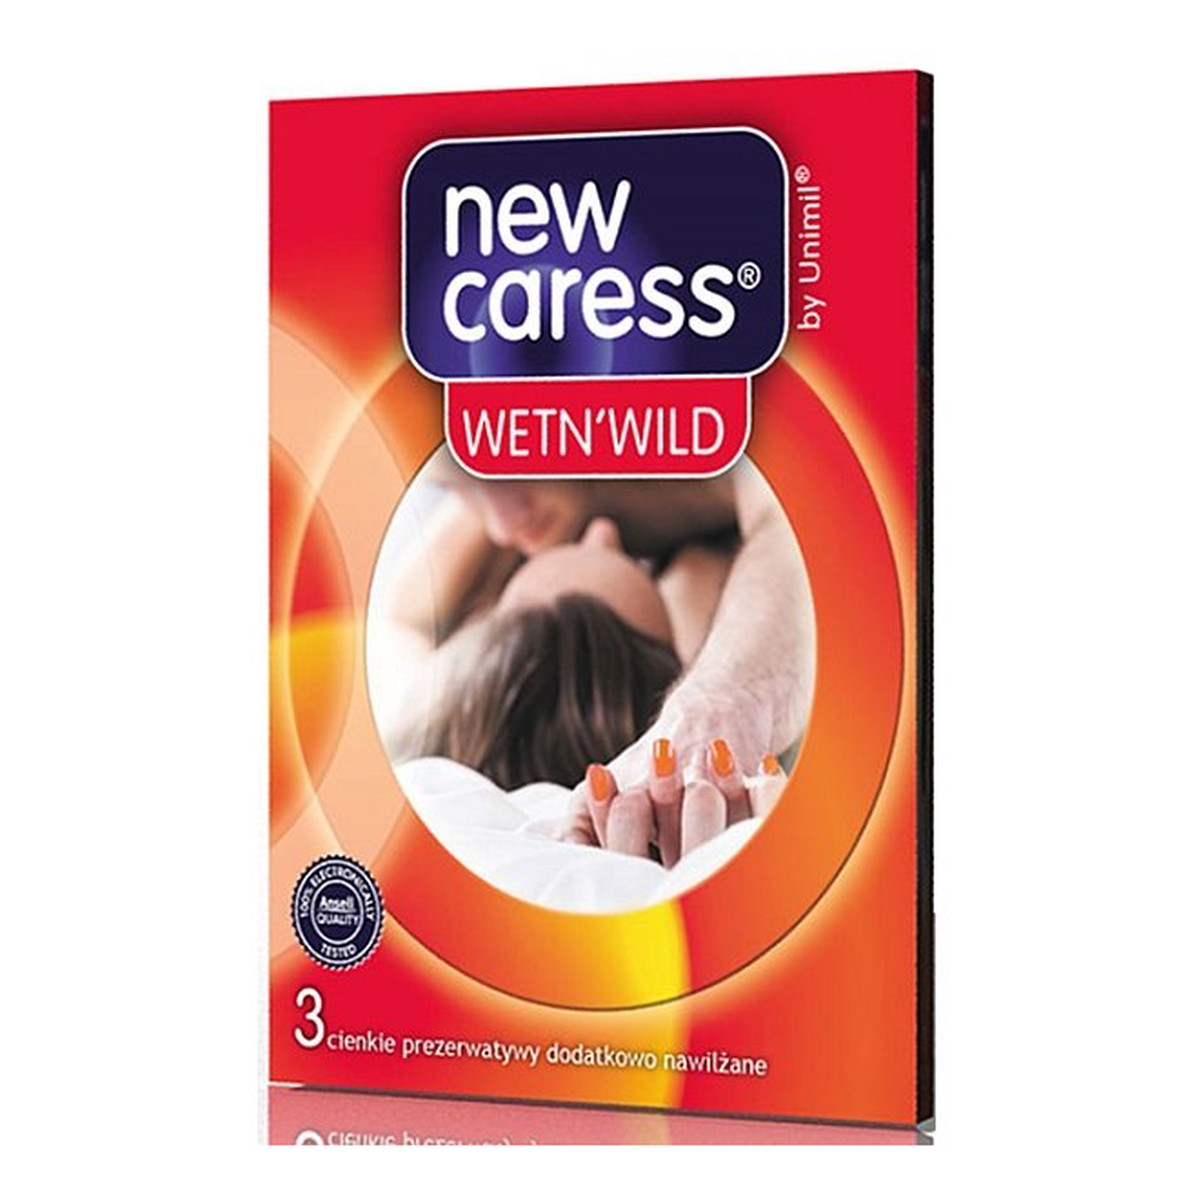 New Caress Wet N'wild lateksowe prezerwatywy 3szt